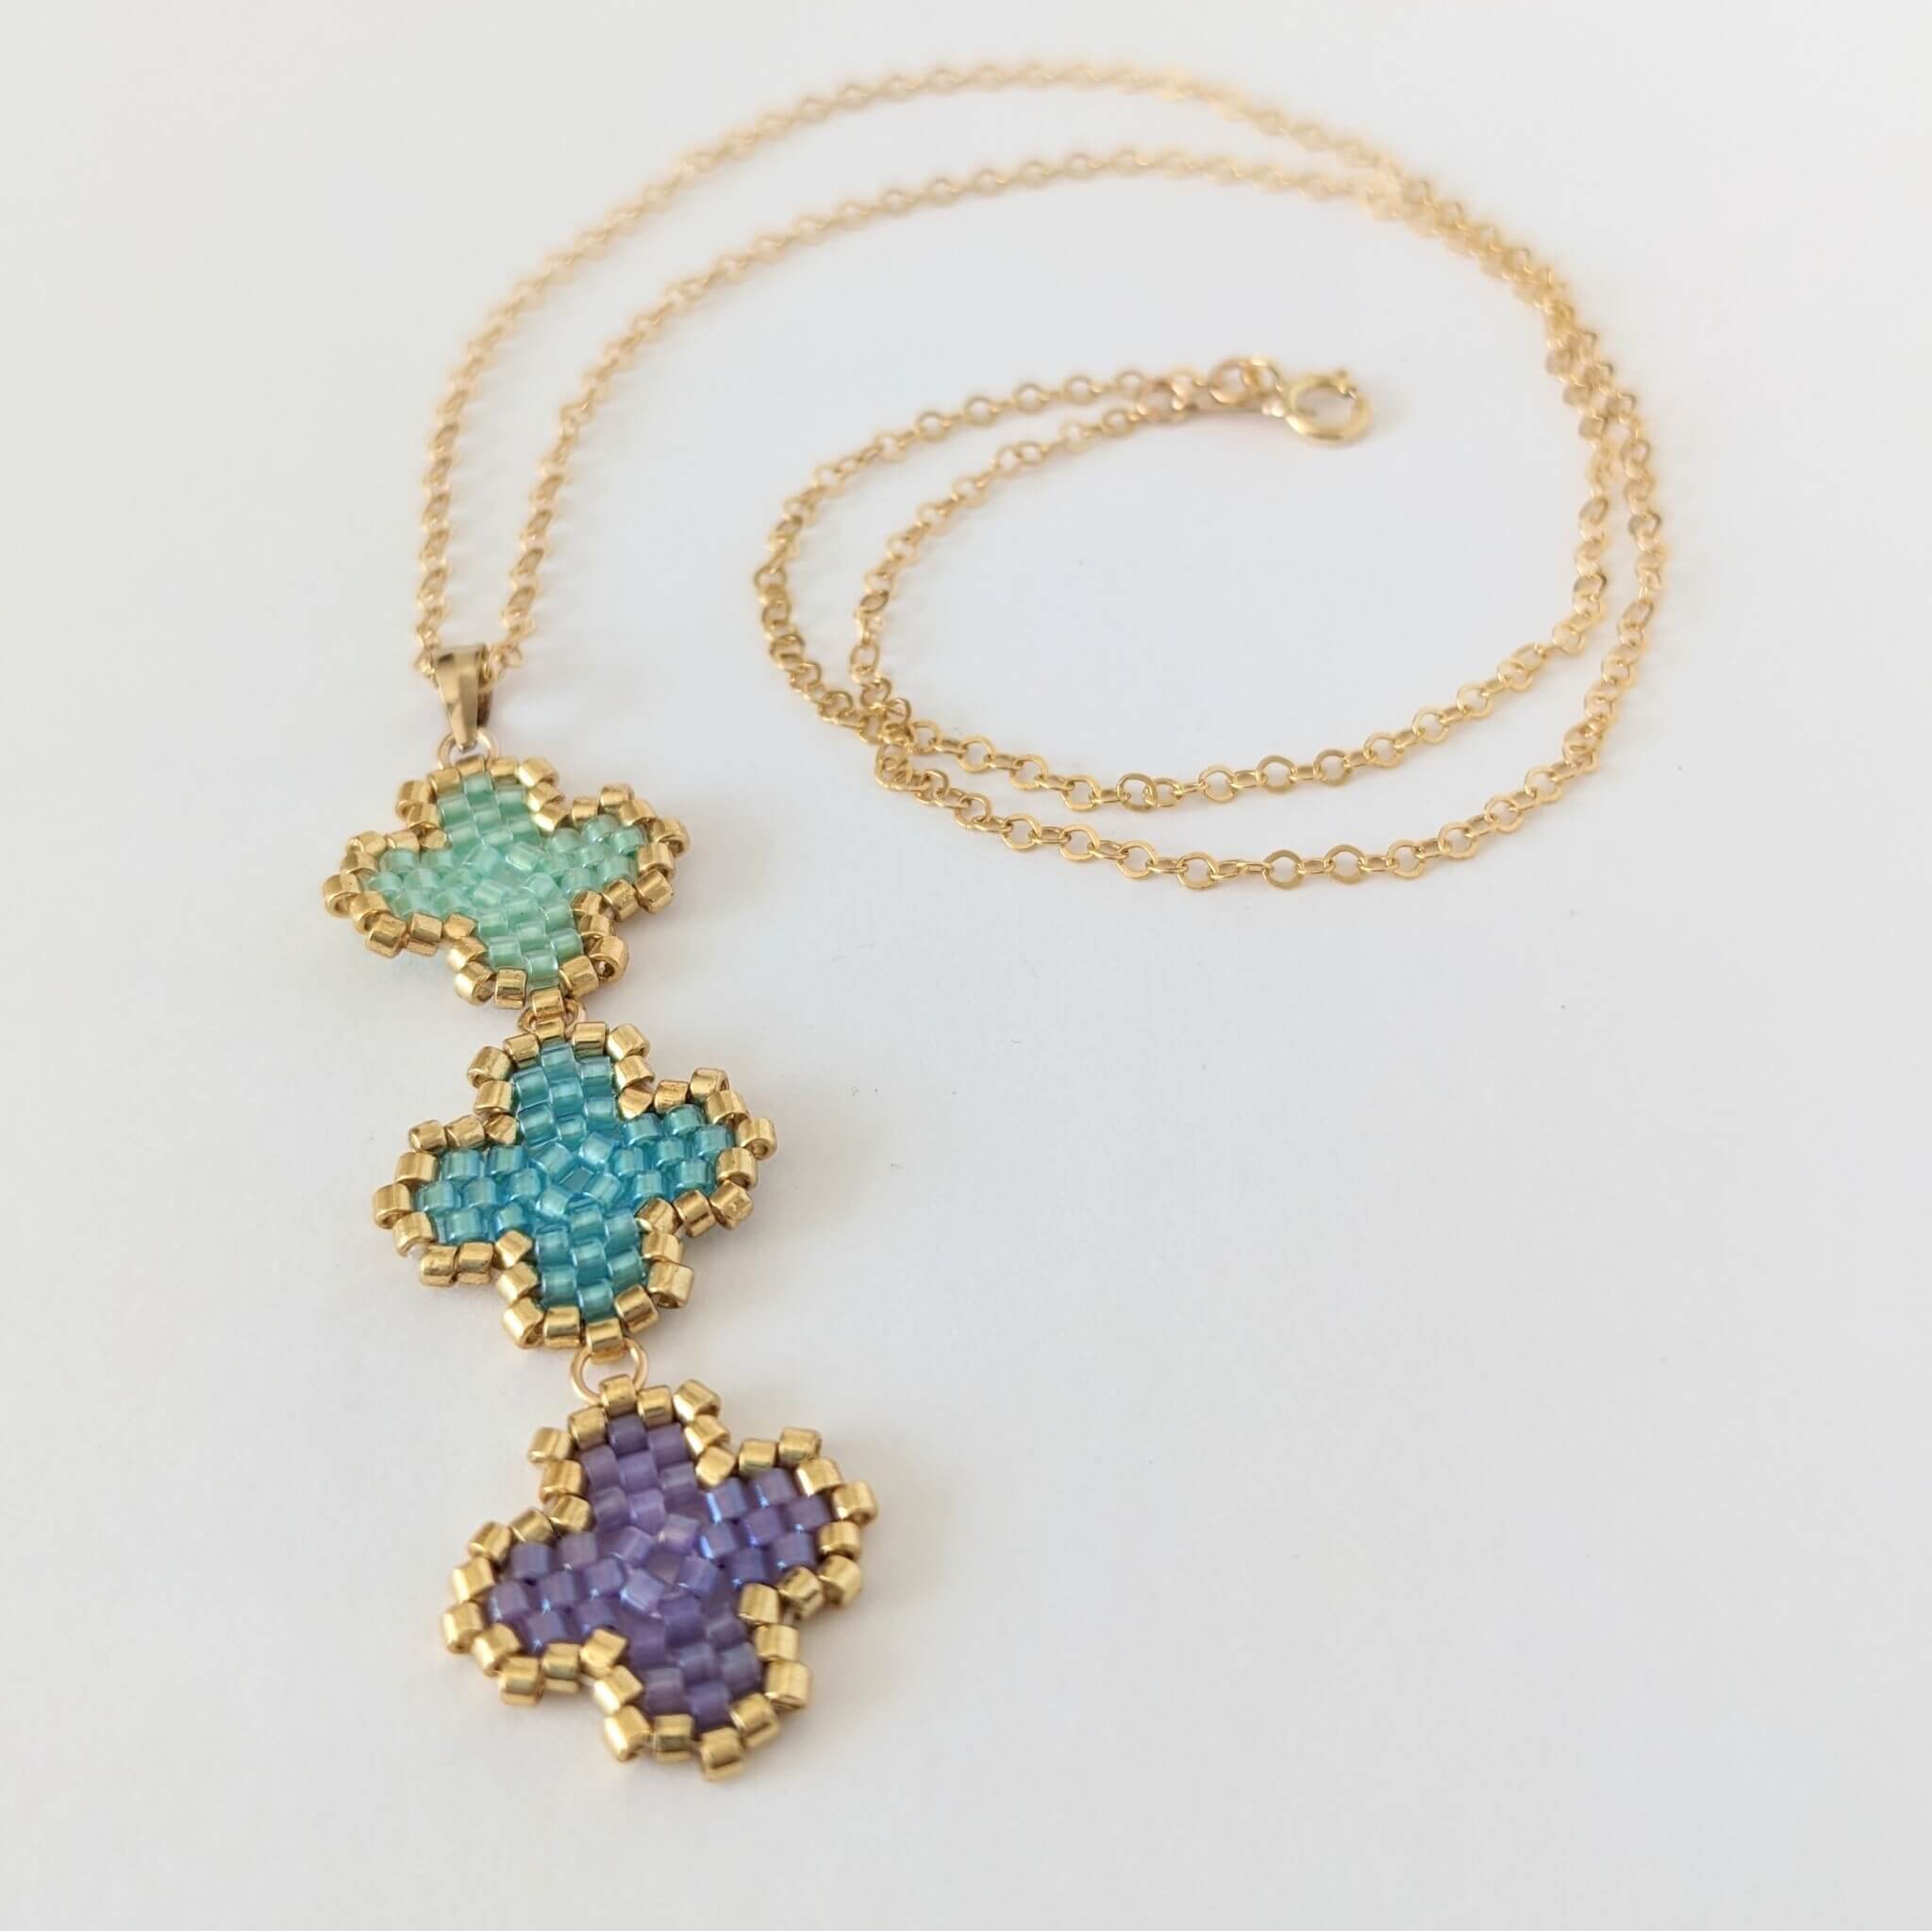 Four Clover Leaf Necklace – Alankaara